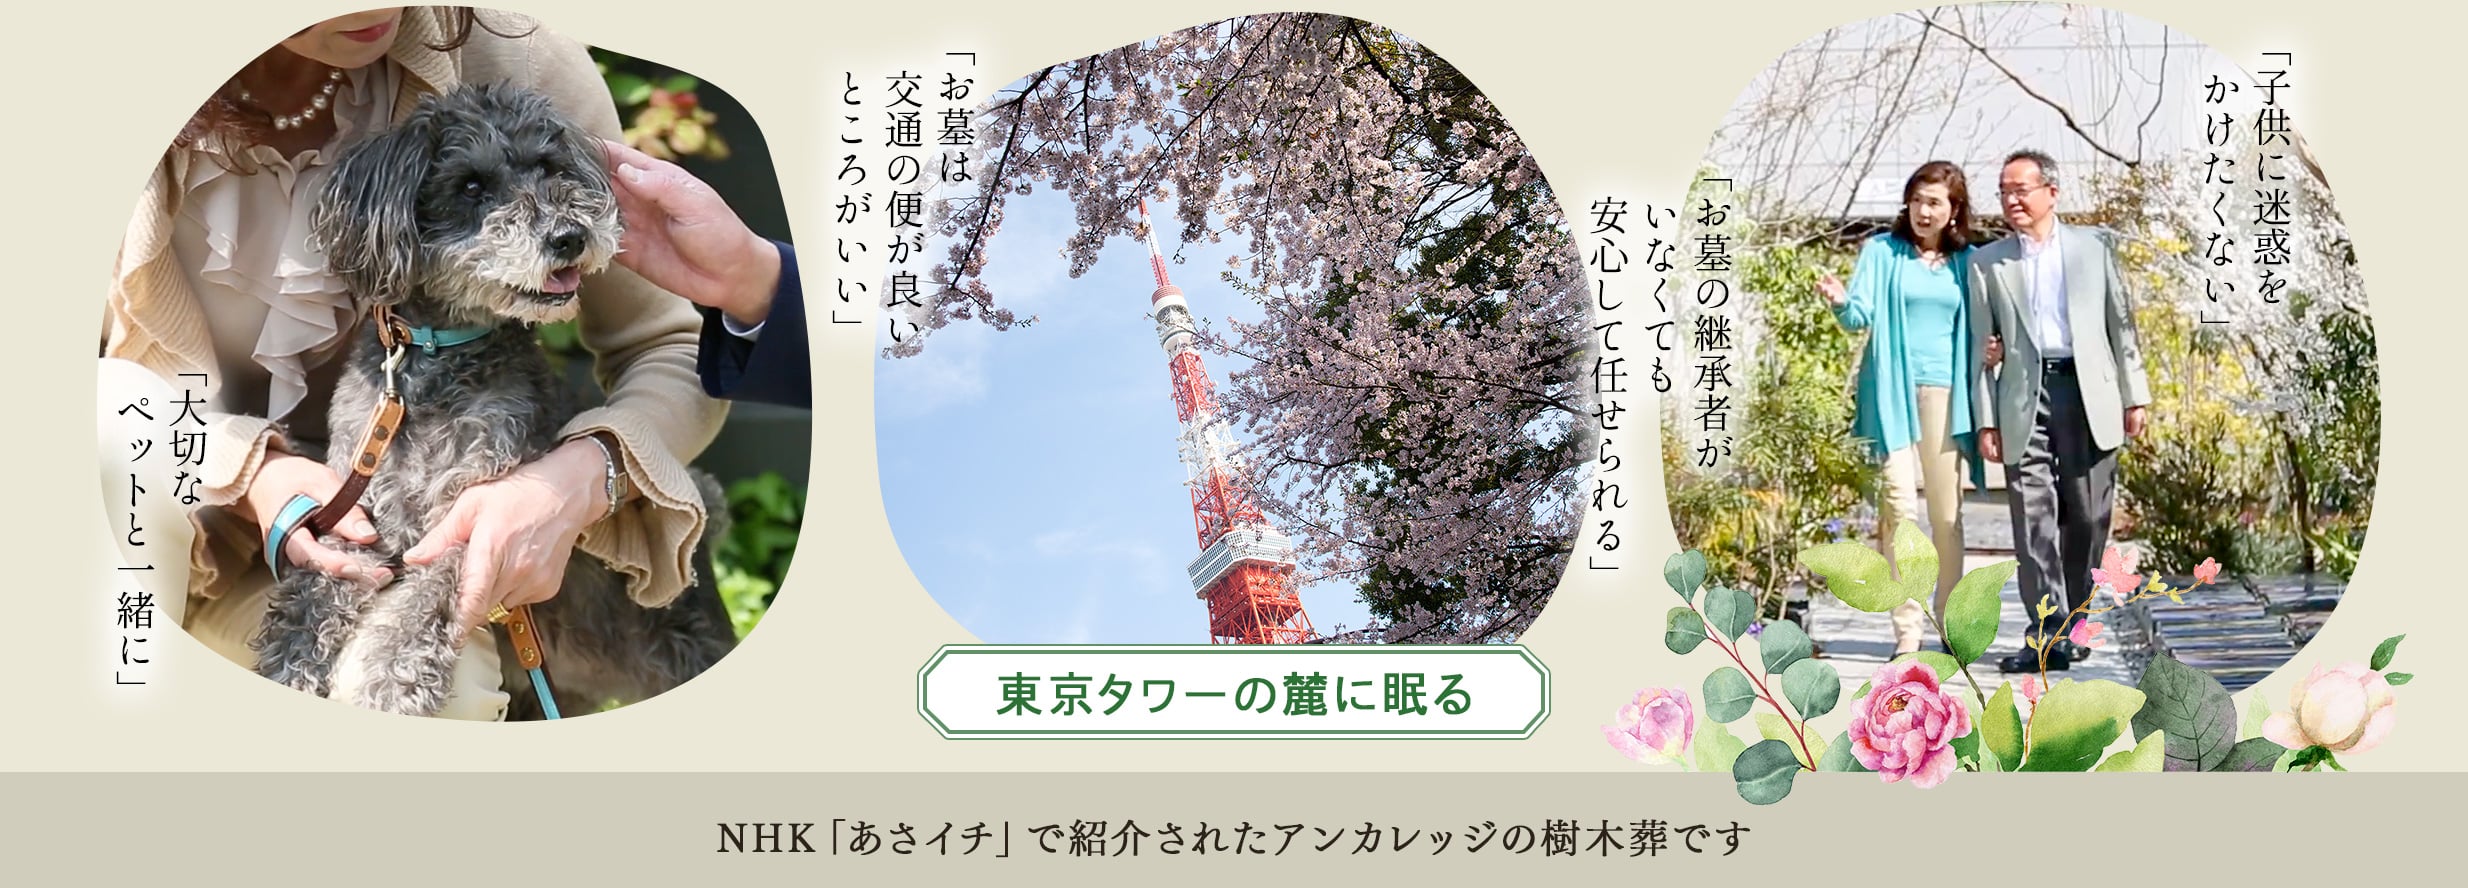 東京タワーの麓に眠る　NHKあさイチで紹介されたアンカレッジの樹木葬です。